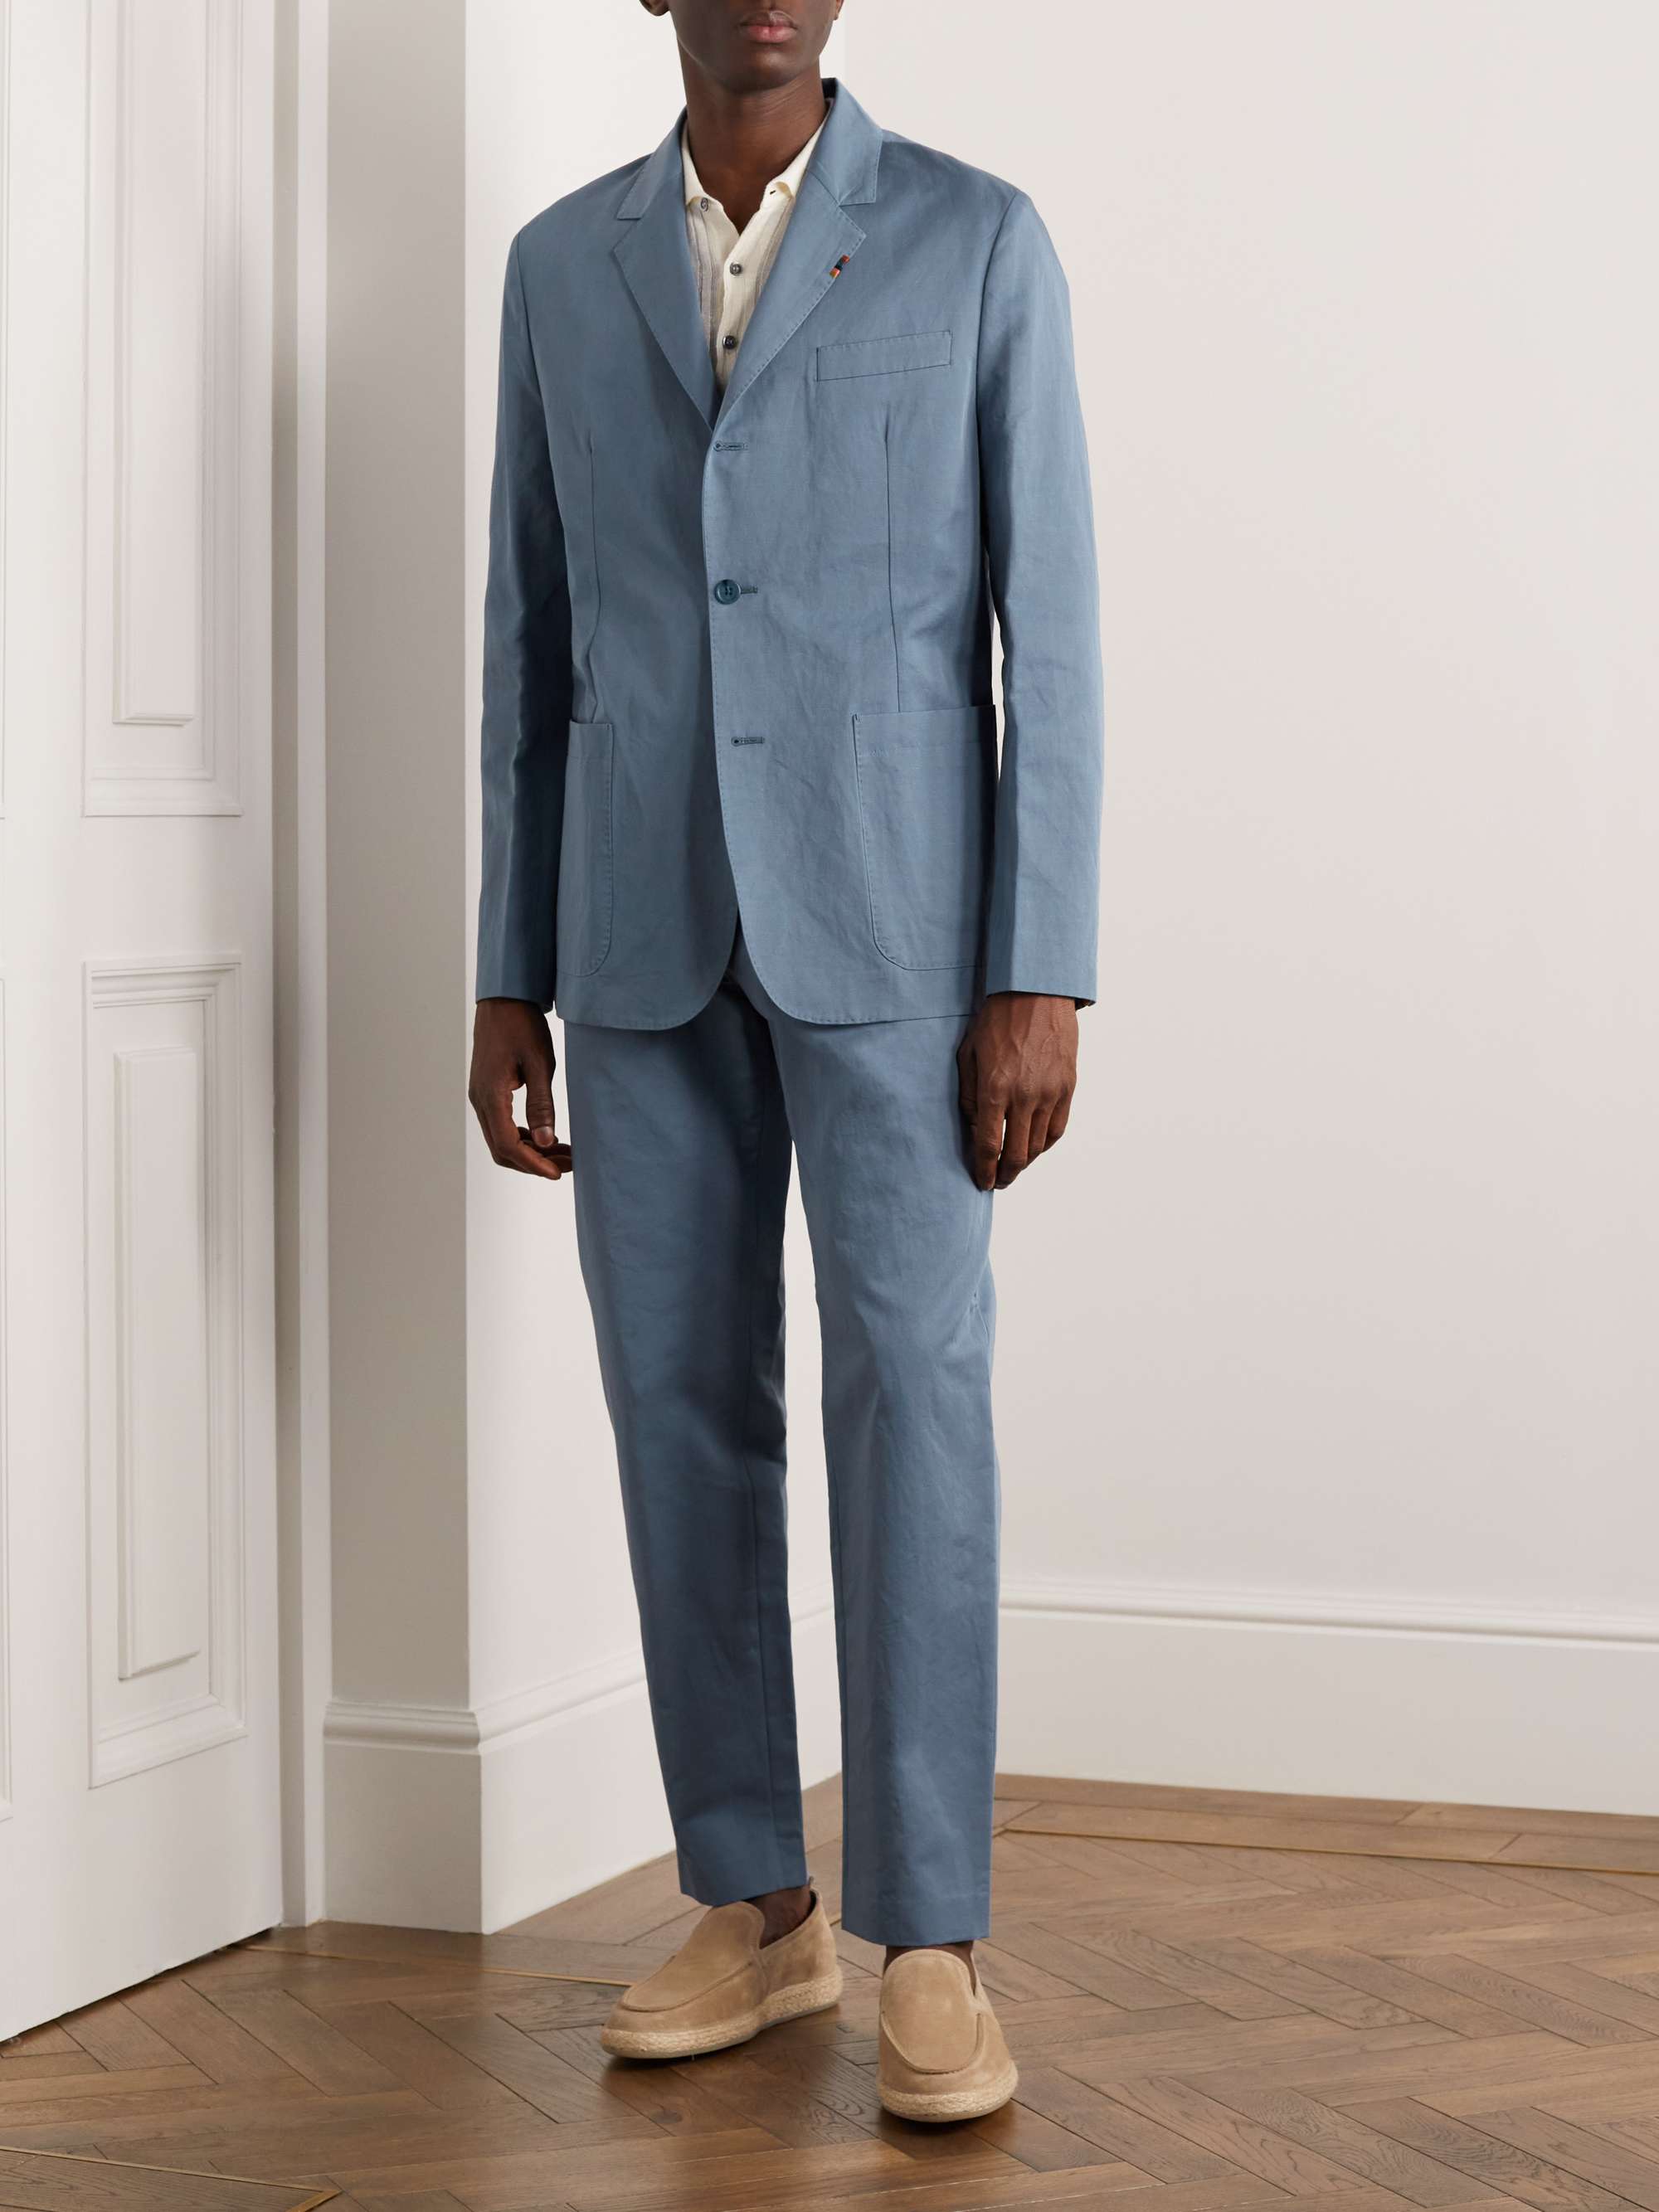 PAUL SMITH Slim-Fit Cotton and Linen-Blend Suit Jacket for Men | MR PORTER